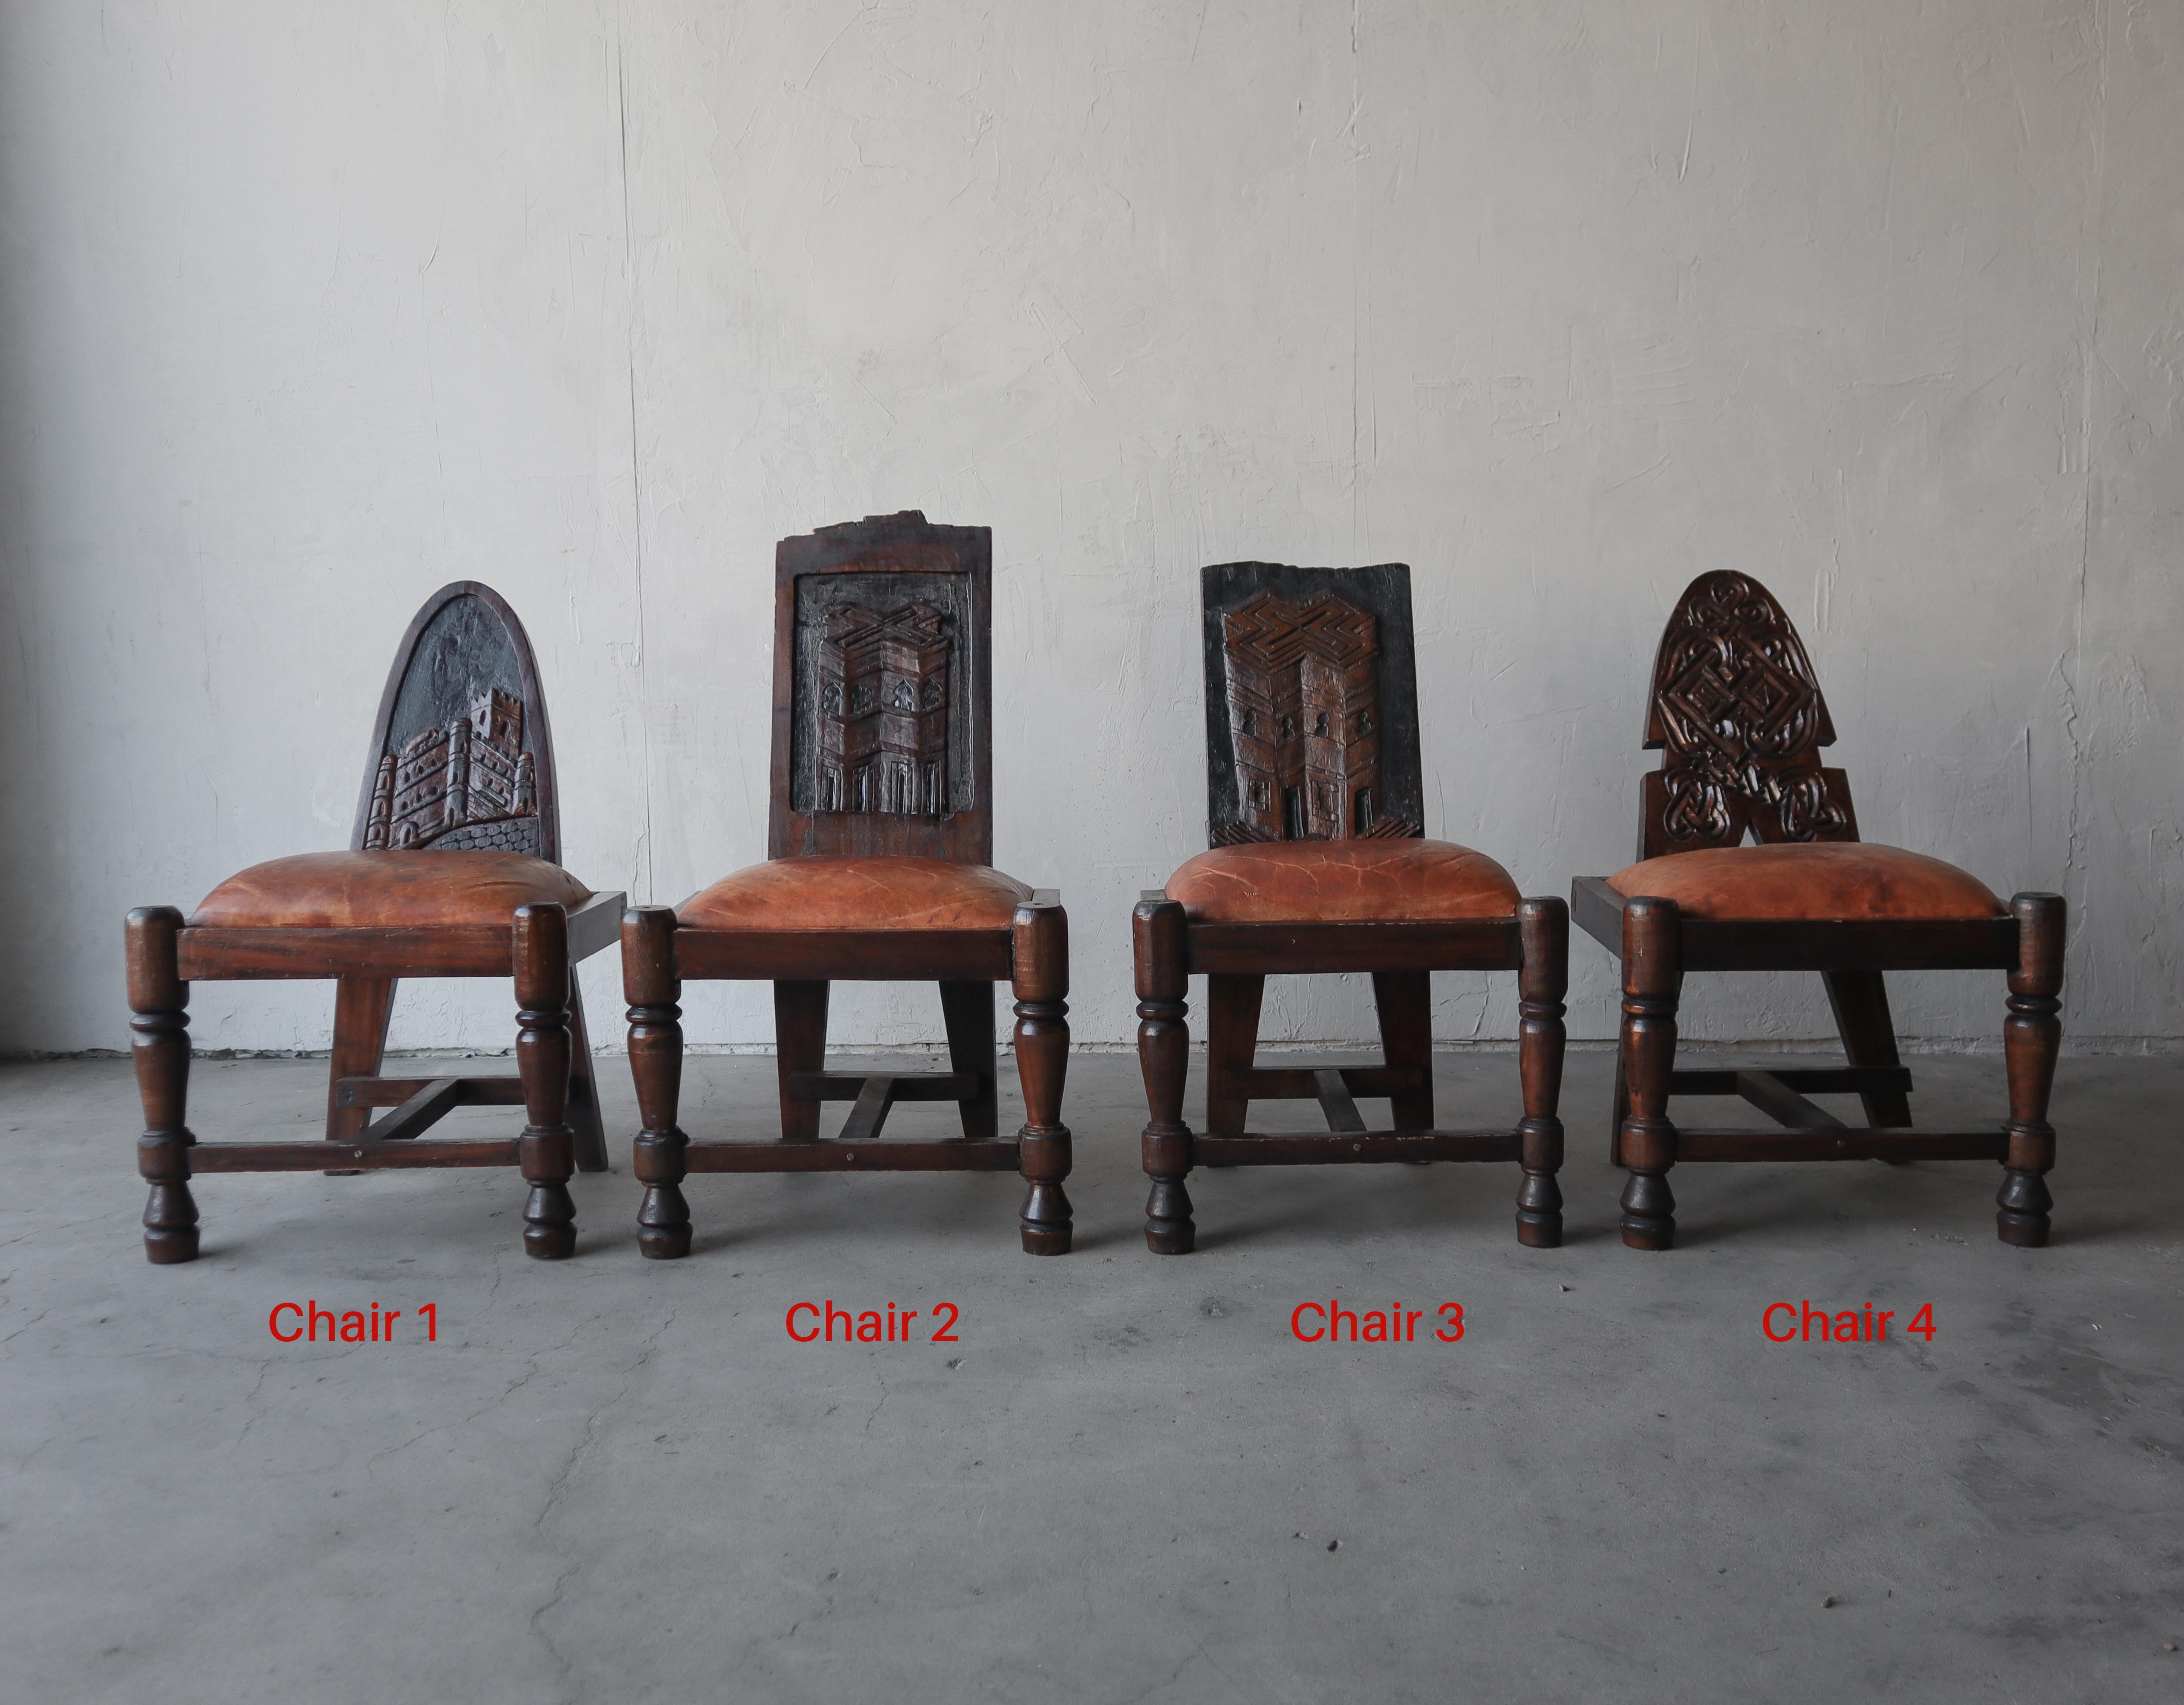 Le prix est par chaise.

Superbes chaises primitives faites à la main en bois sculpté et en cuir patiné. Des pièces d'appoint parfaites. 

Ces chaises sont super anciennes avec tous ces super détails primitifs. Le cuir est joliment patiné et les